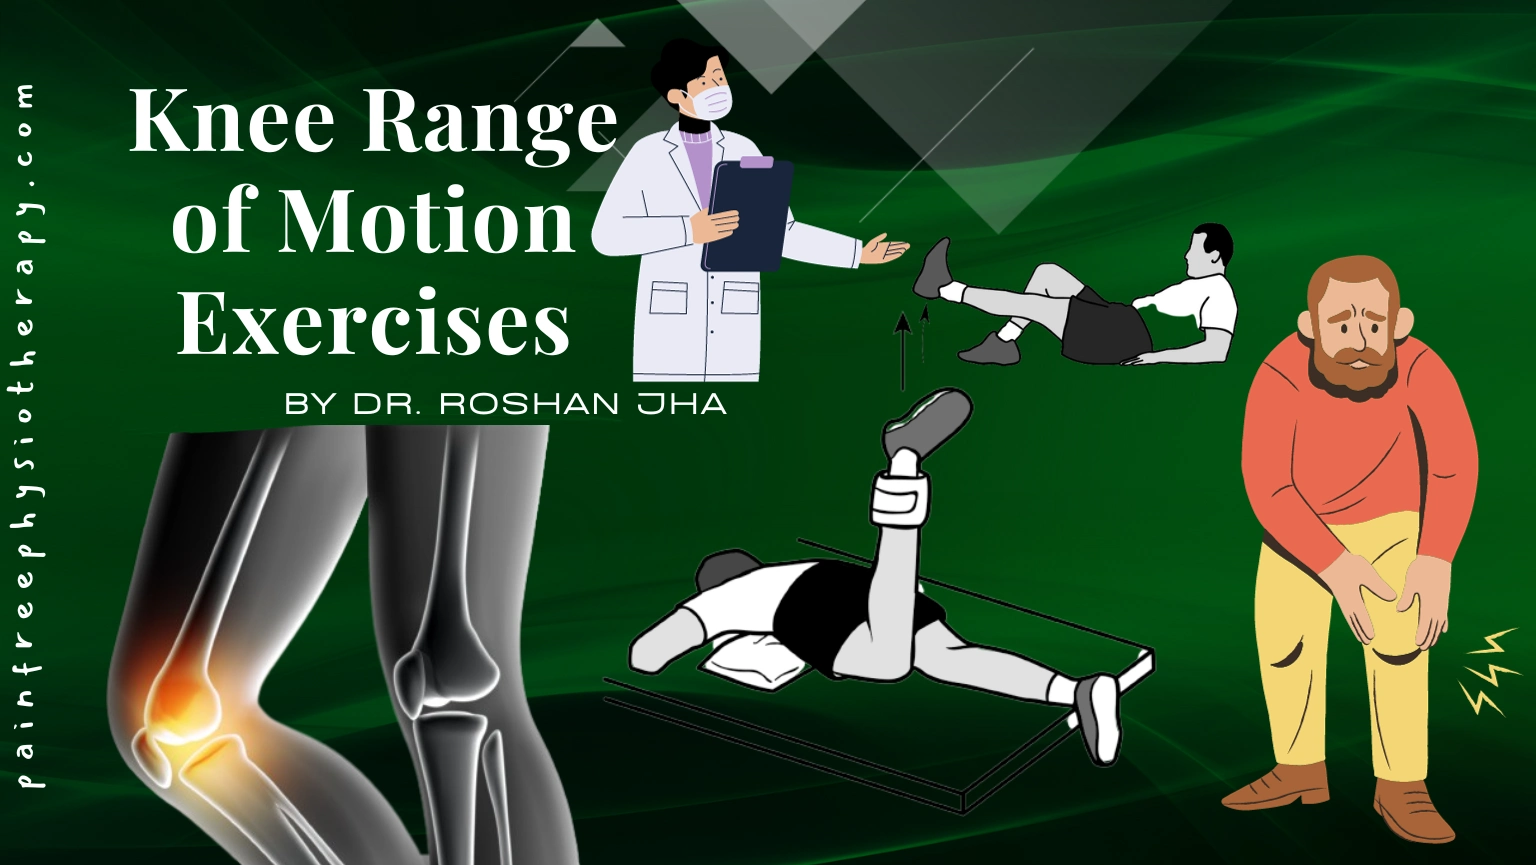 7 Knee Range of Motion Exercises for knee pain